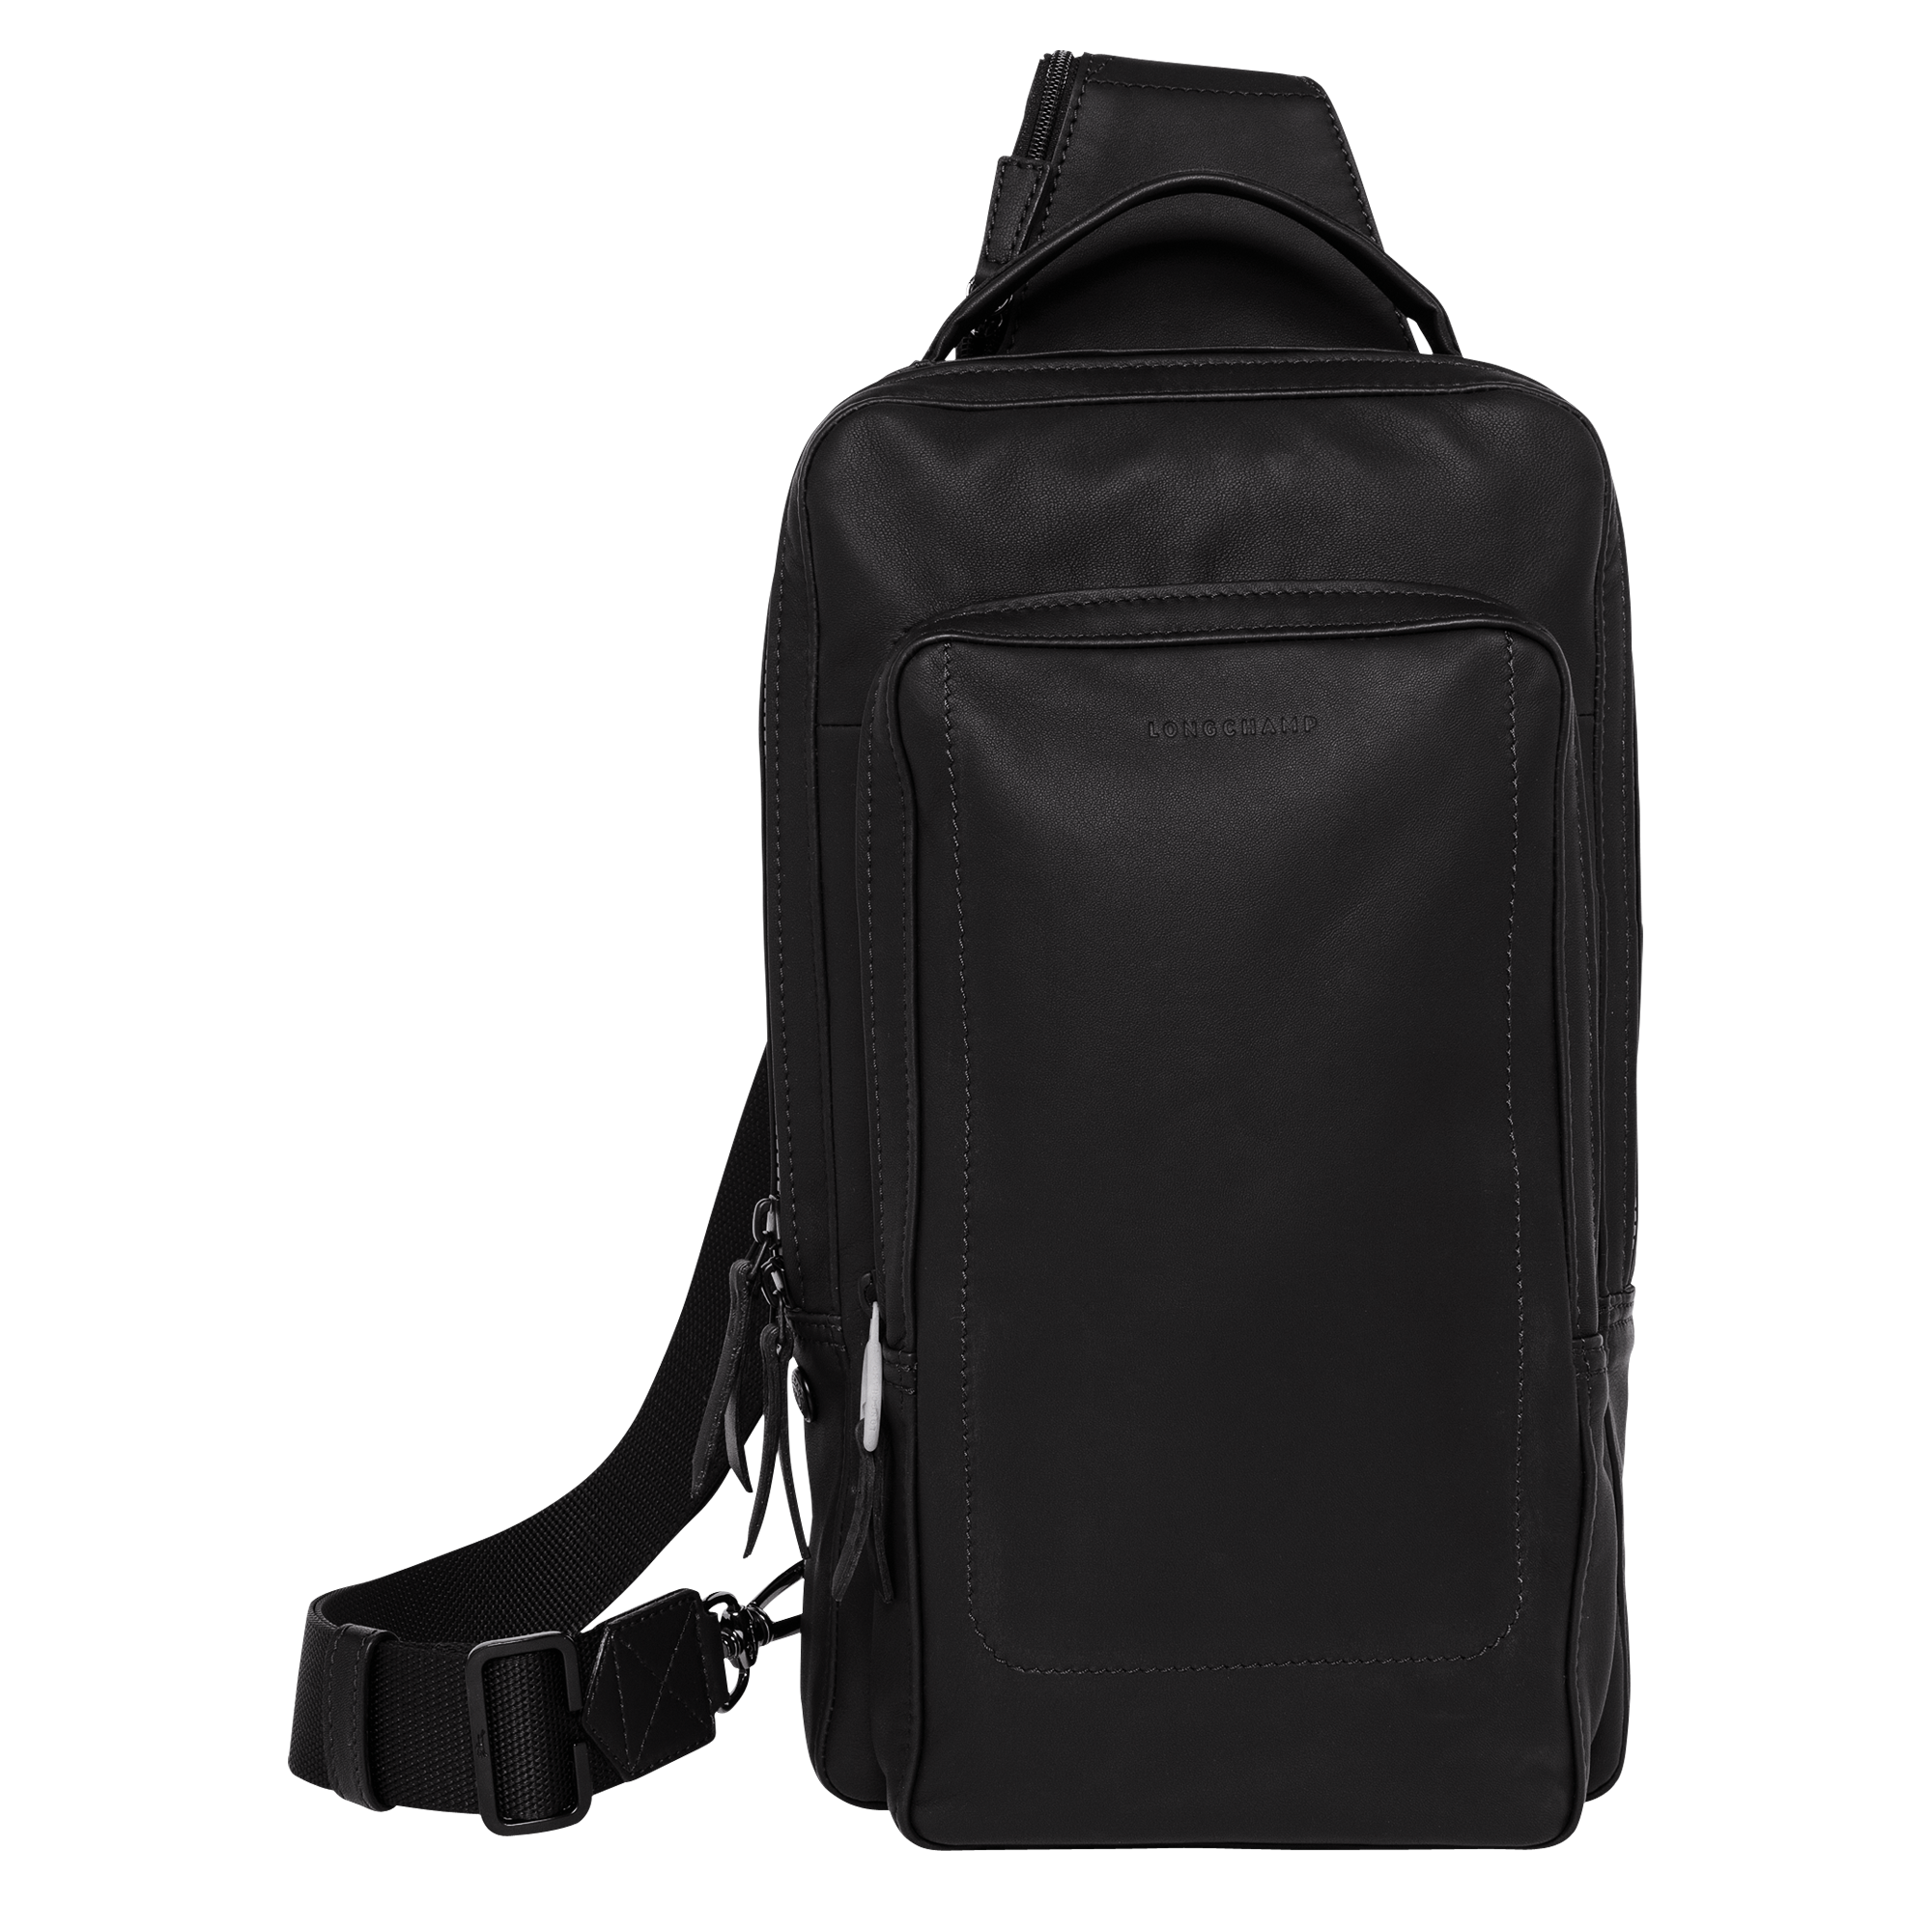 longchamp backpack ireland